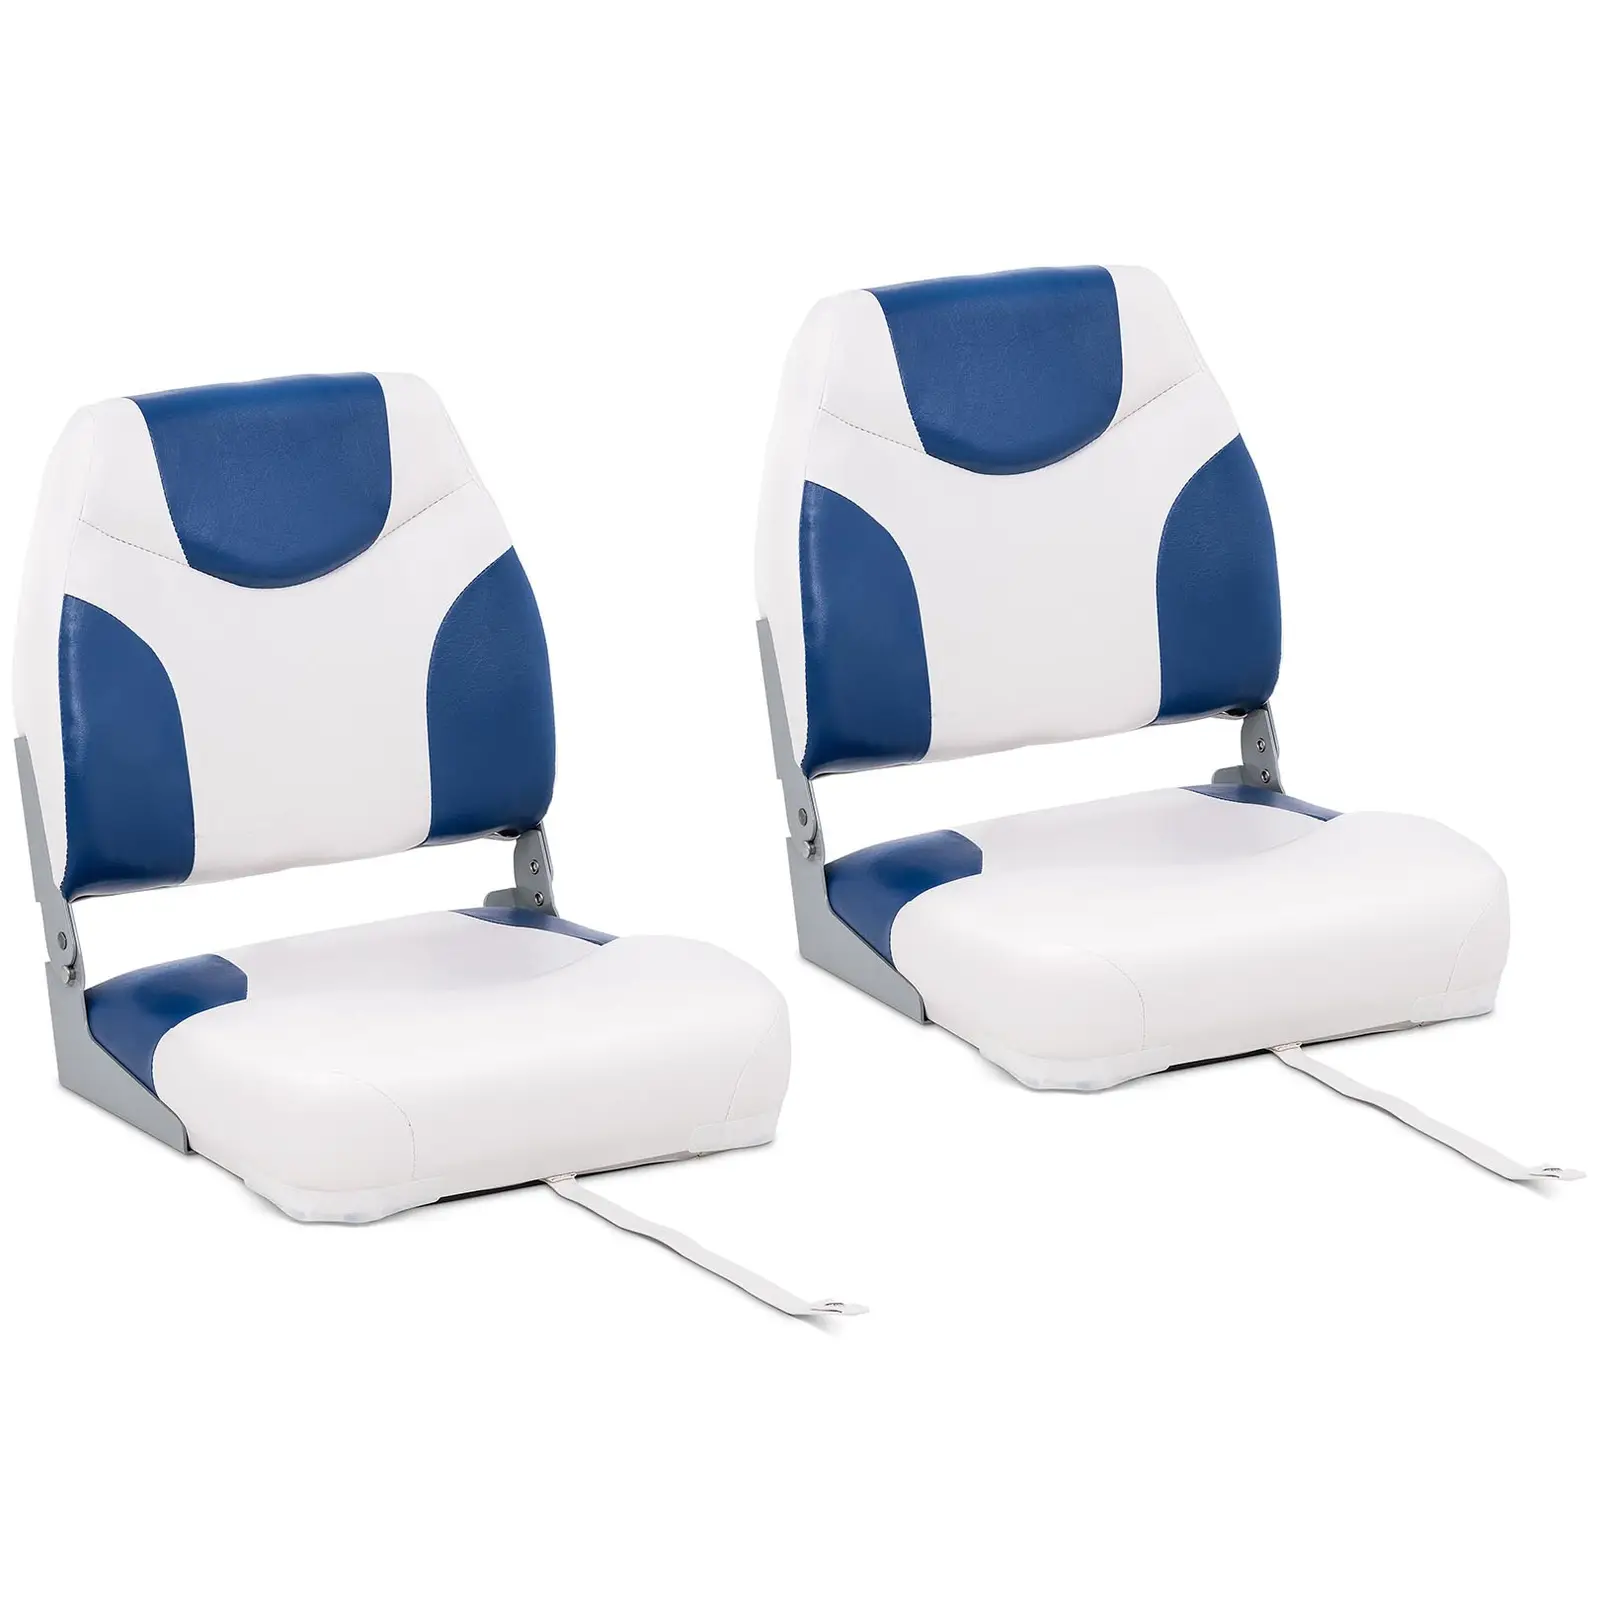 Valties sėdynė - 2 vnt. - 50x42x51 cm - balta ir mėlyna